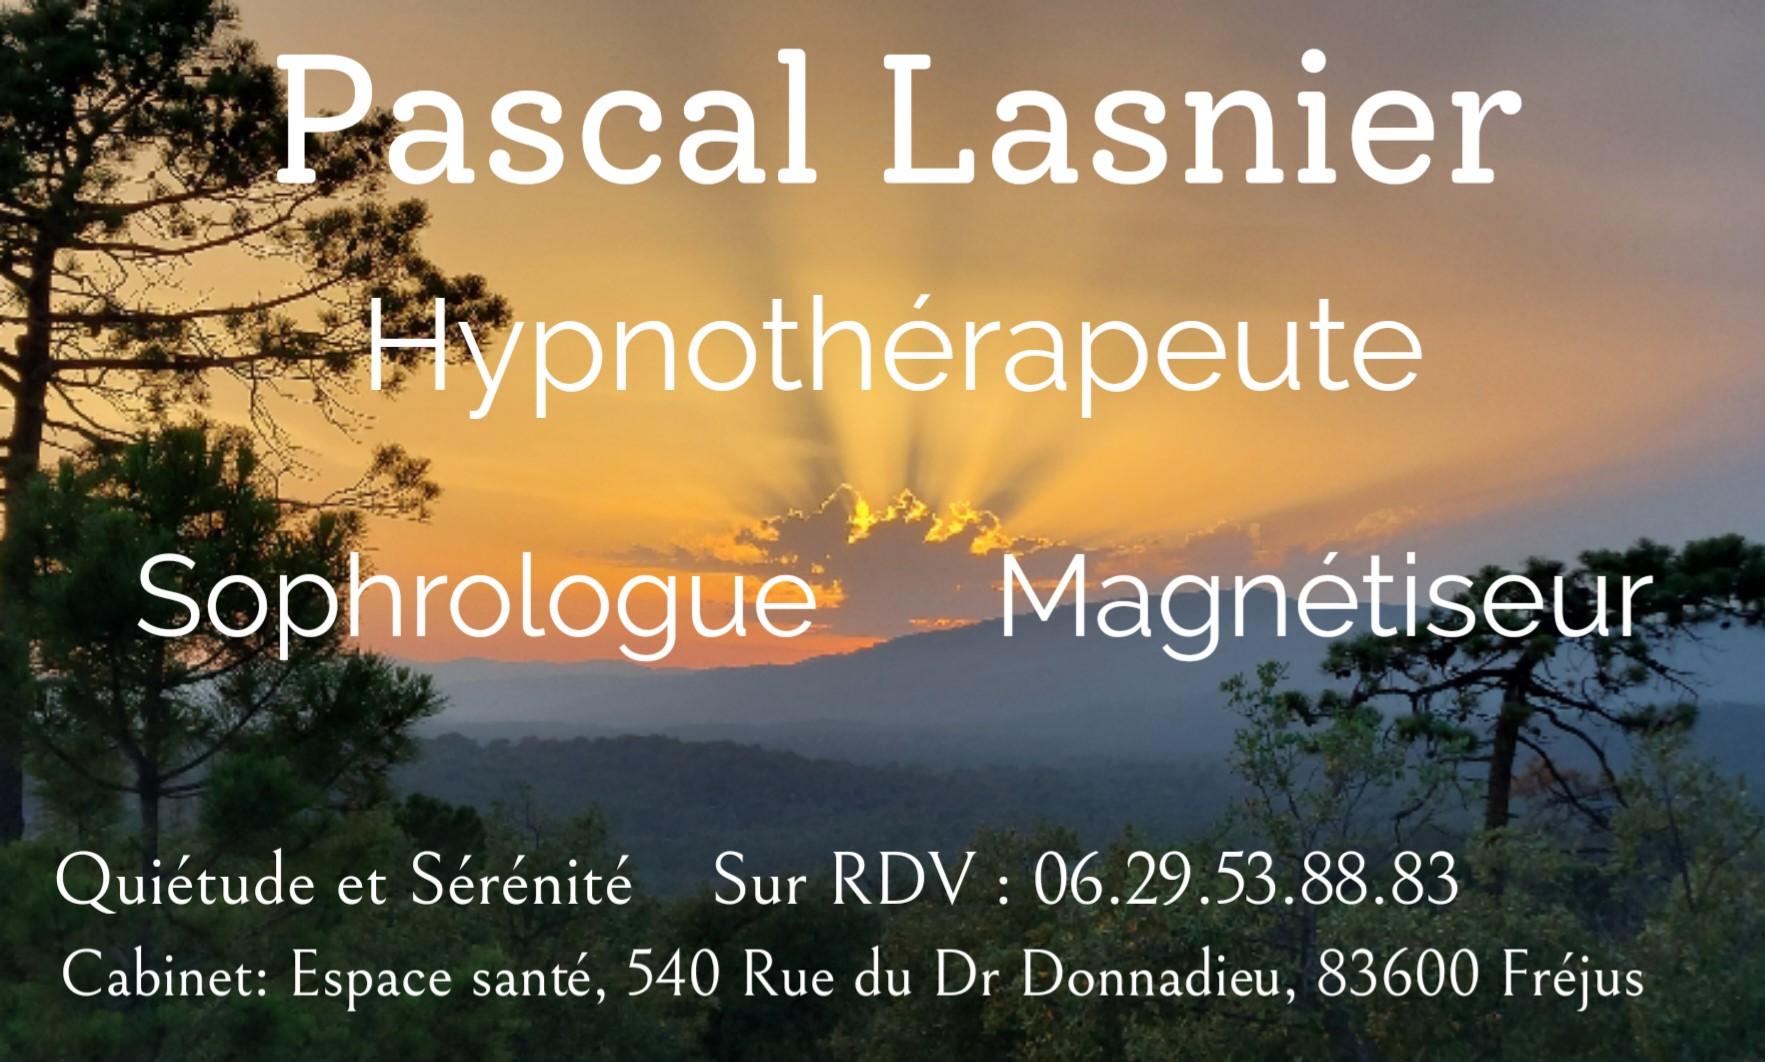 Pascal lasnier hypnotherapeute sophrologue magnetiseur energetique